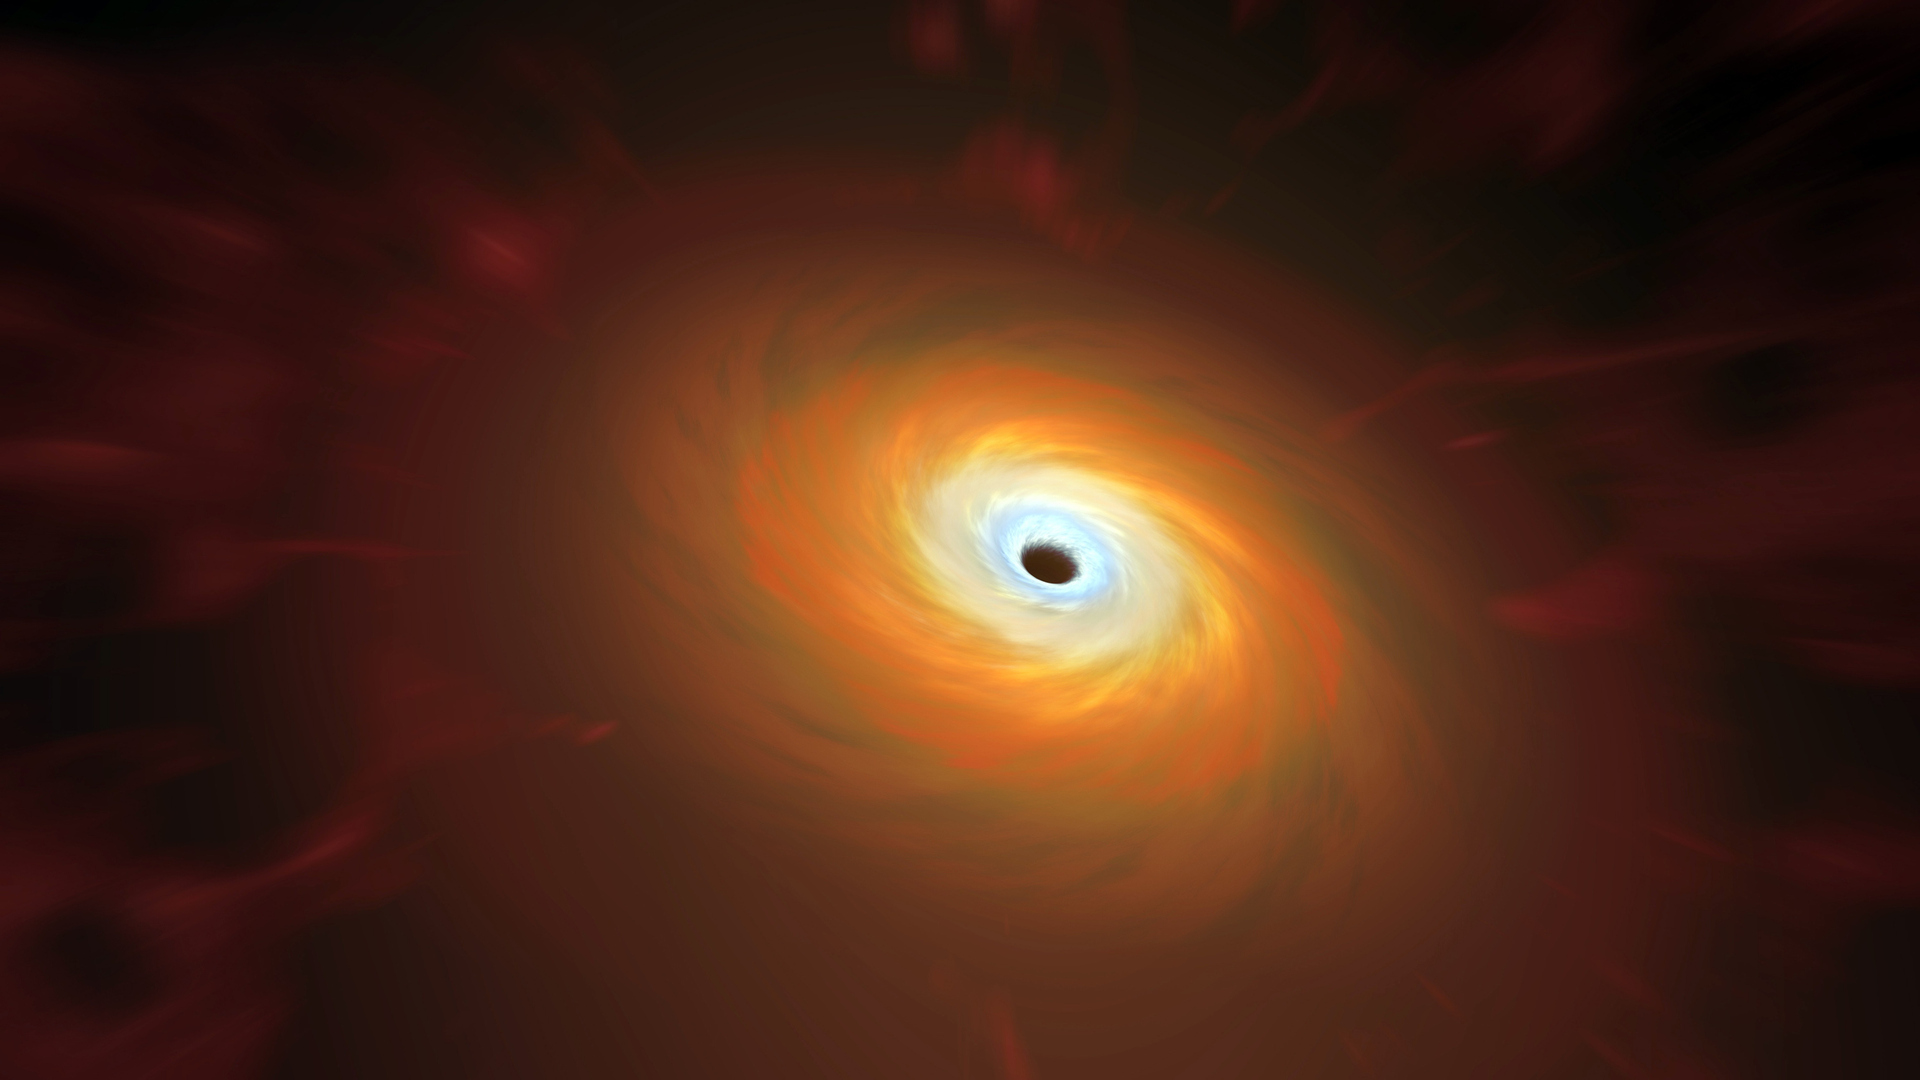 اكتشاف فقاعة من الغاز الساخن تتدفق حول الثقب الأسود الهائل في مركز مجرتنا